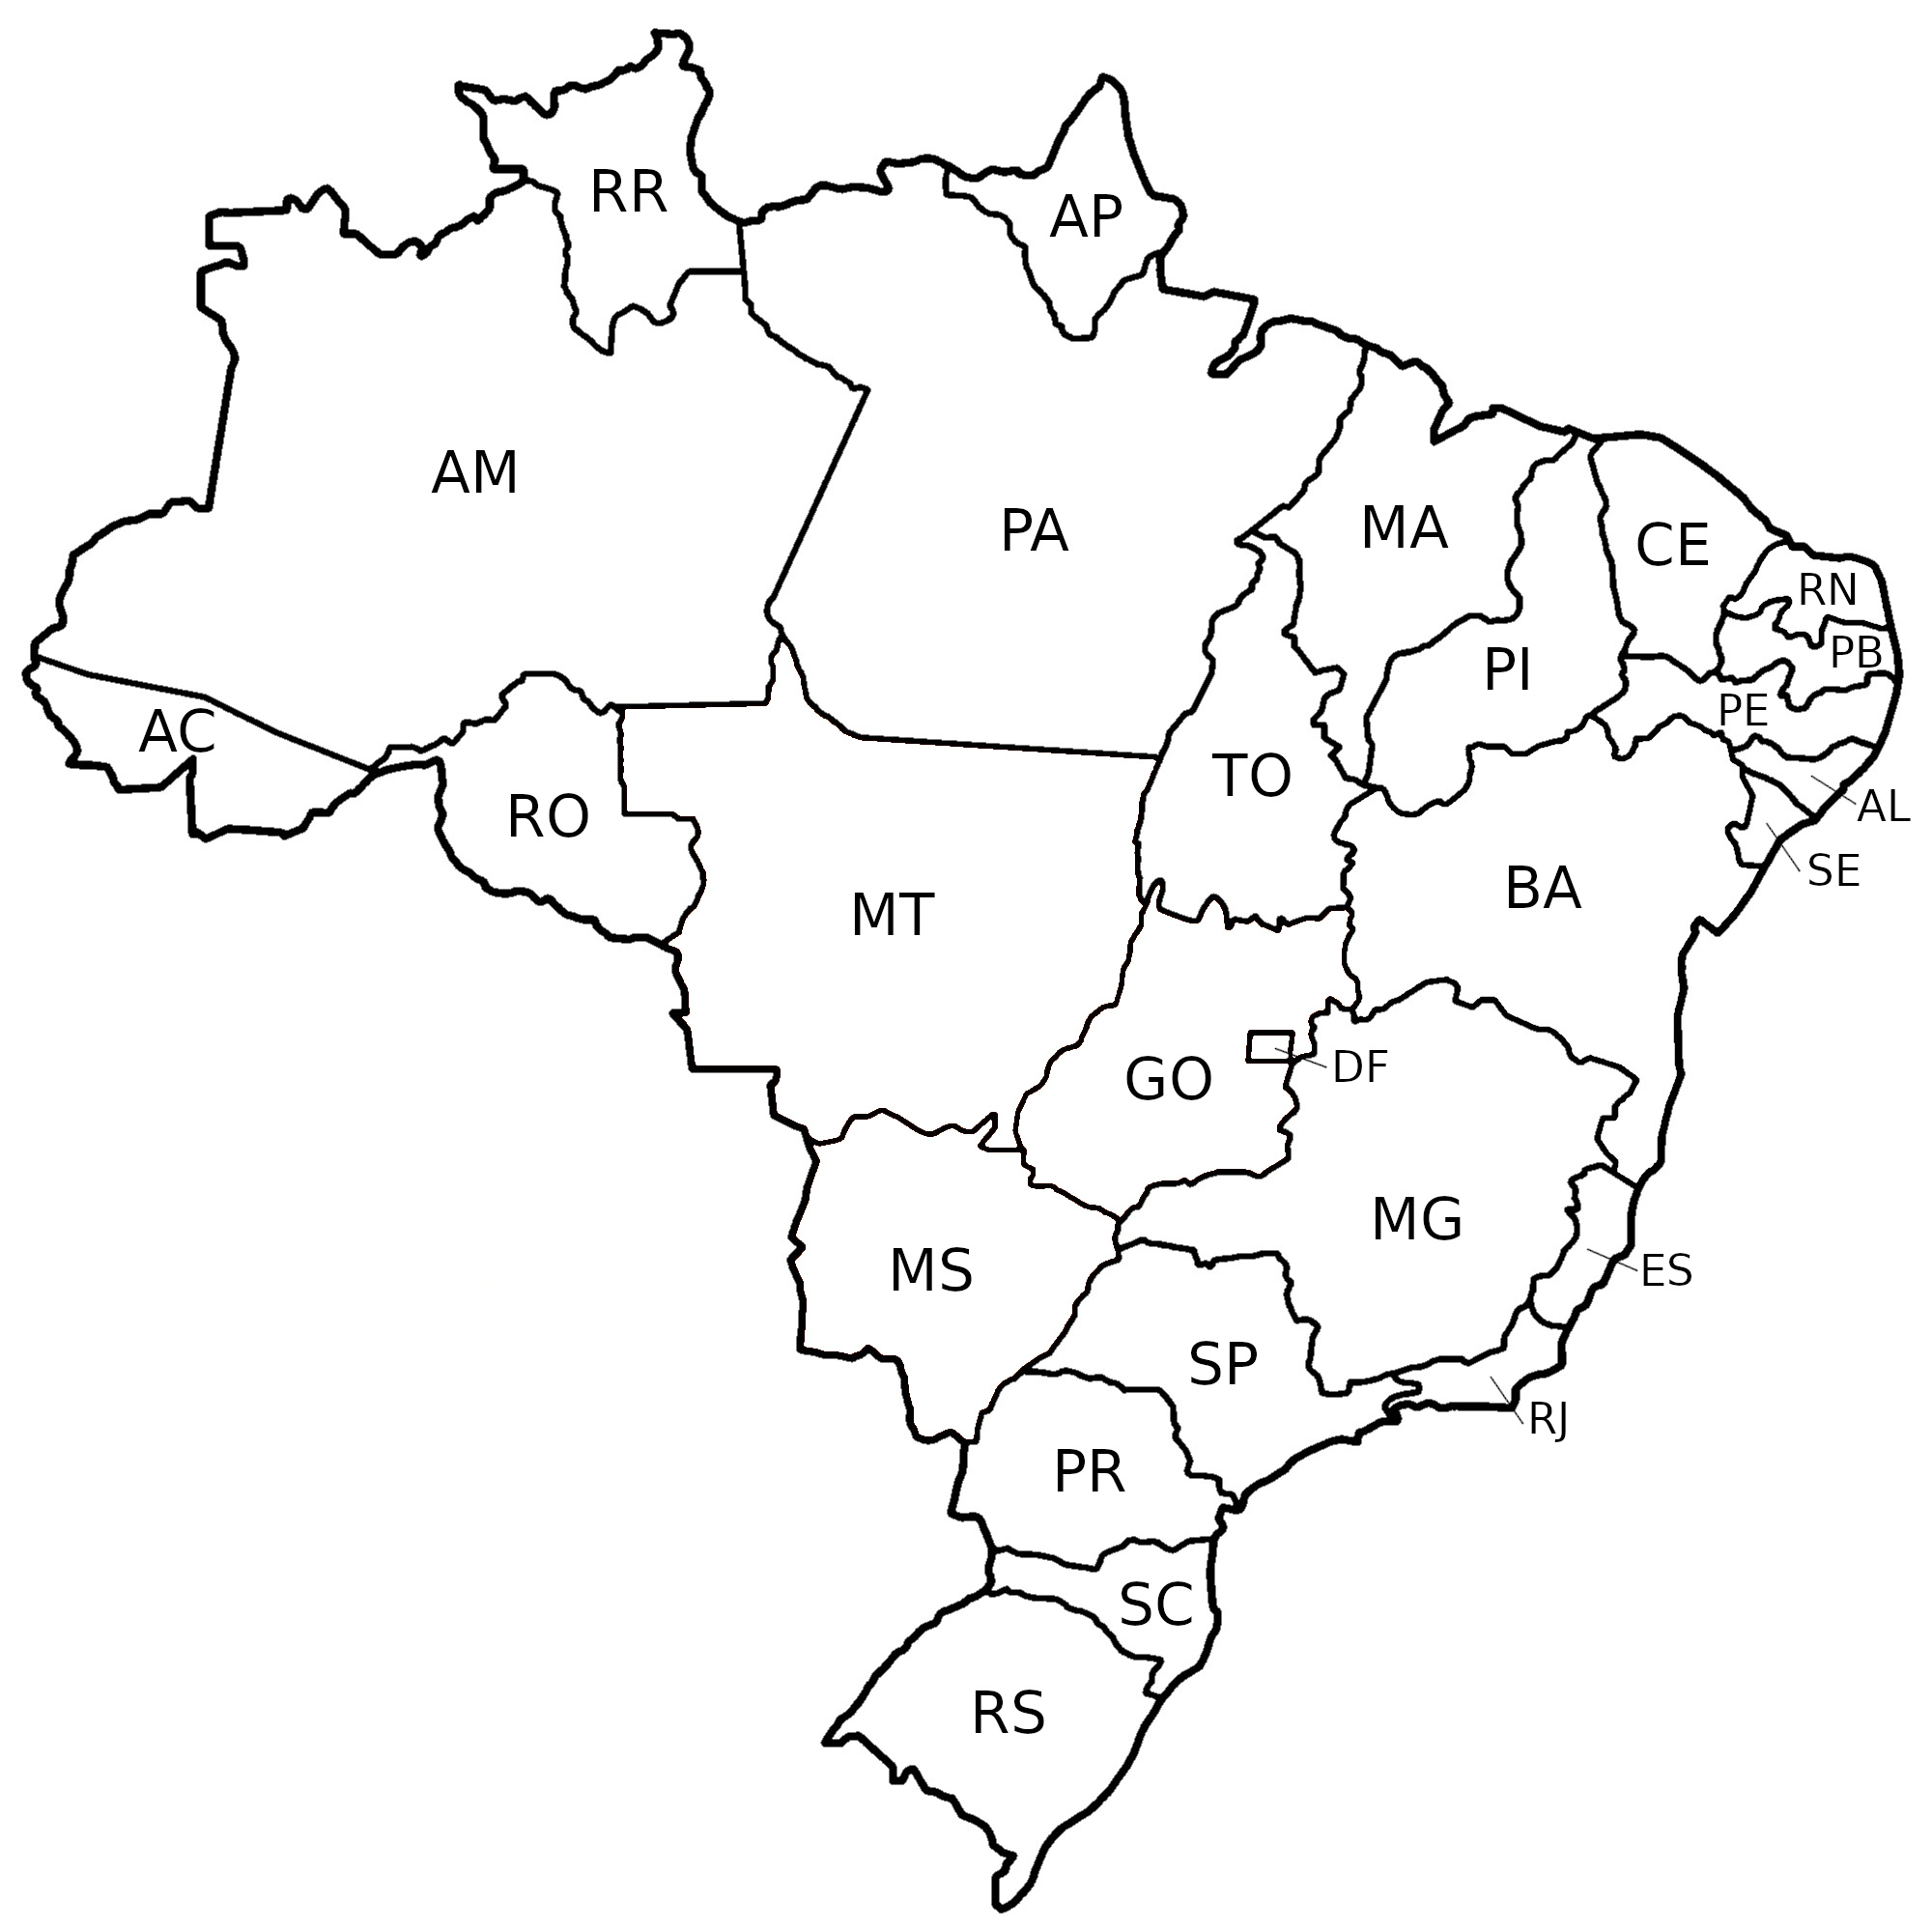 Imagem do mapa do brasil com todos os territórios brasileiros demarcados